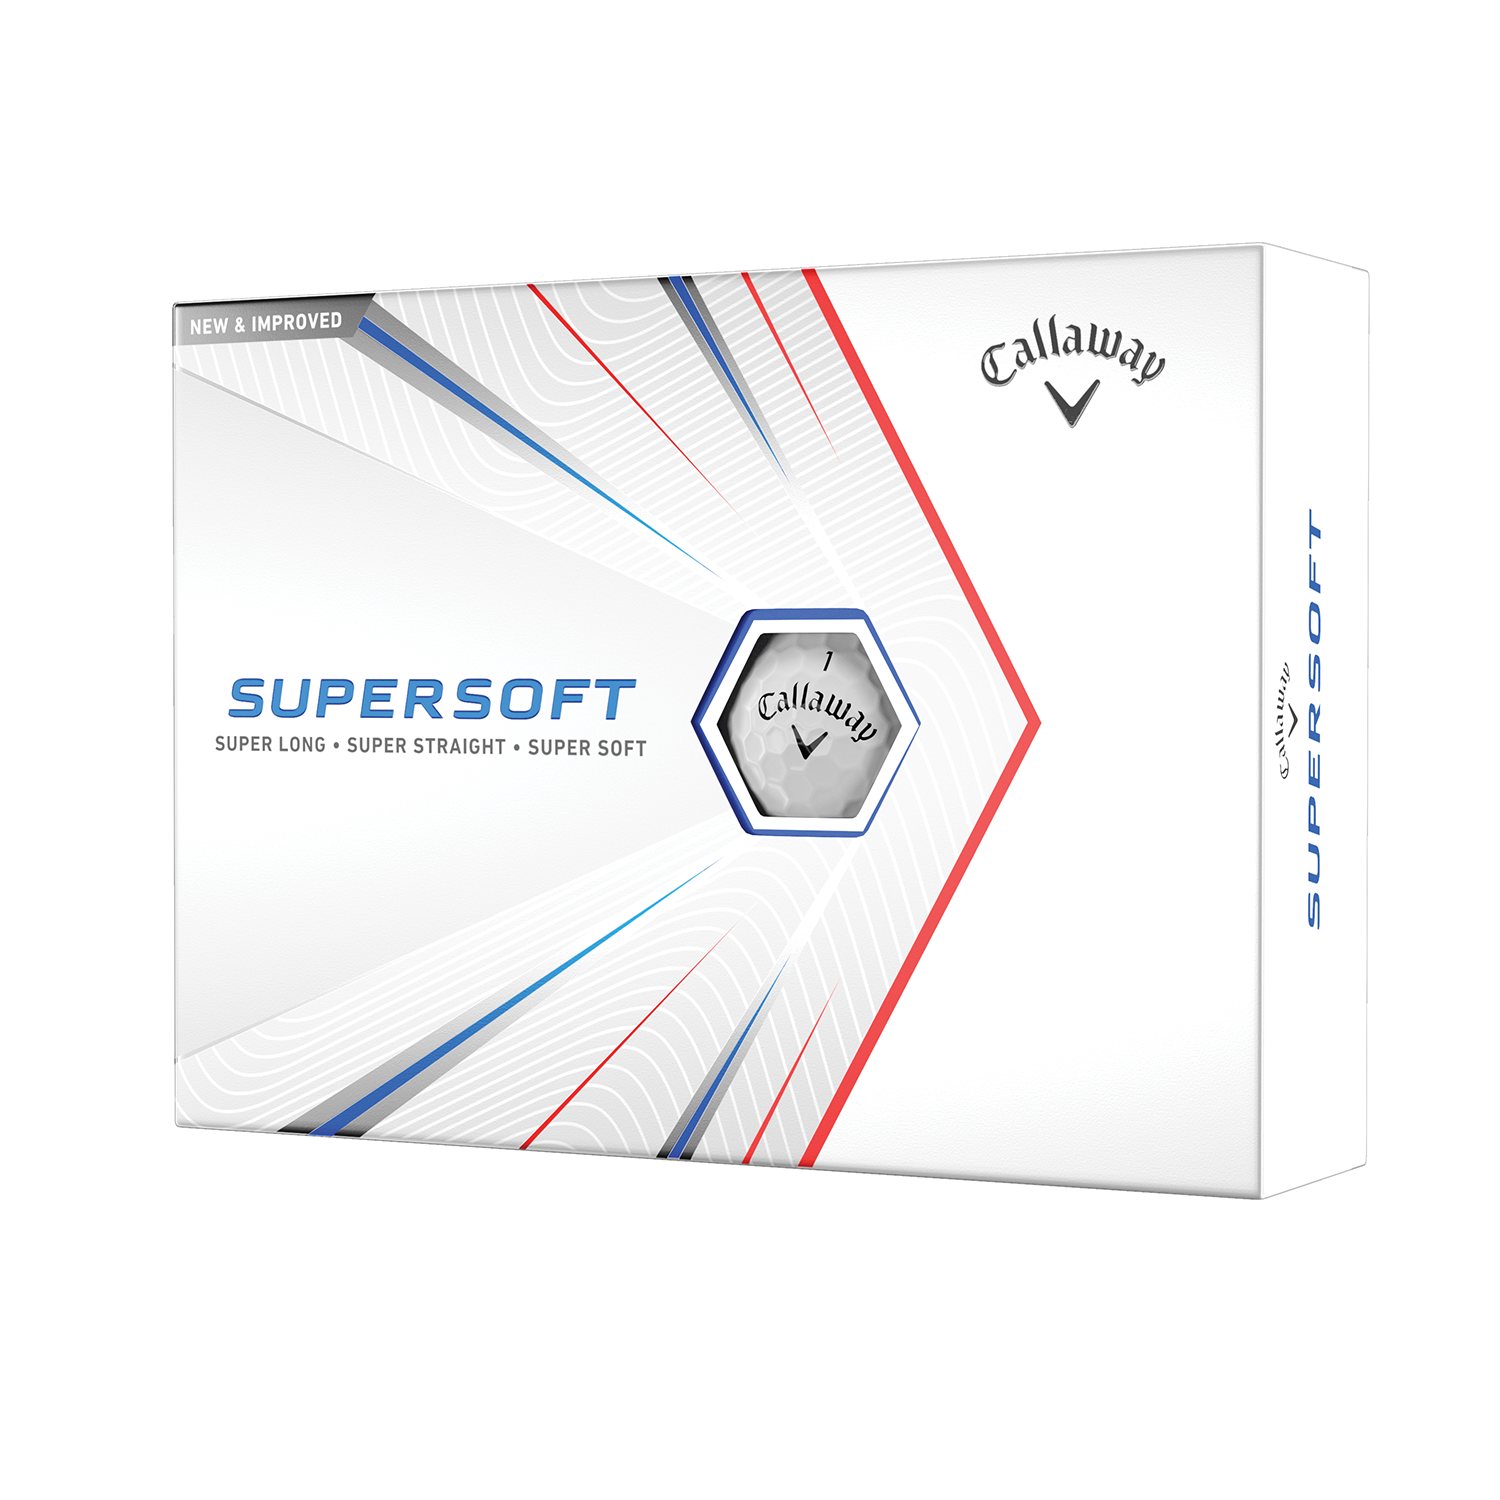 Supermercados Super Golff - 🚨ATENÇÃO Clientes Super Golff